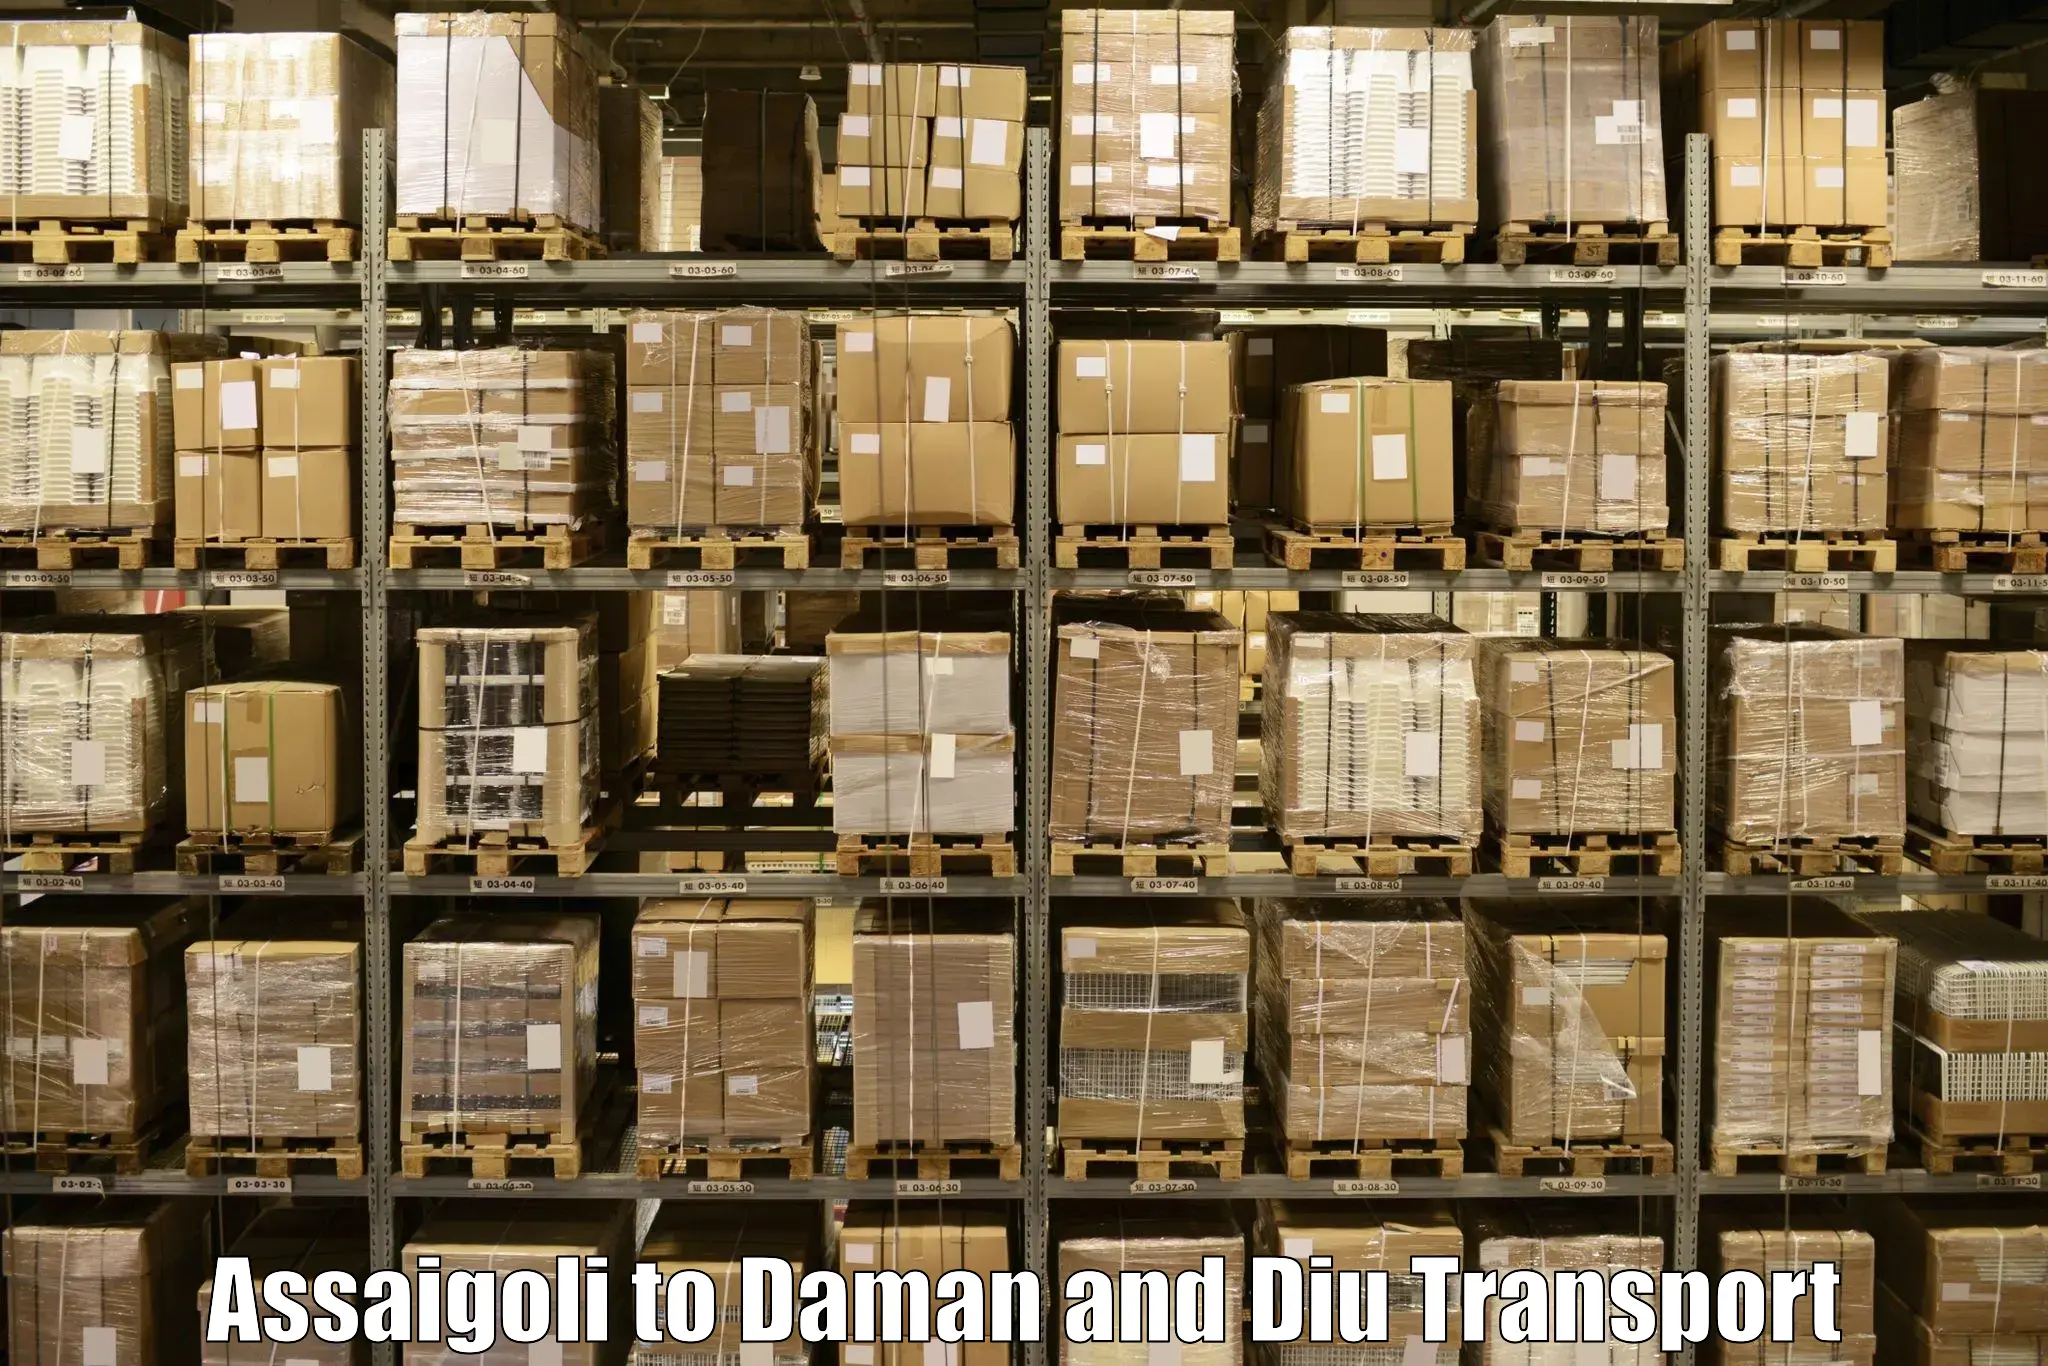 Daily transport service Assaigoli to Daman and Diu